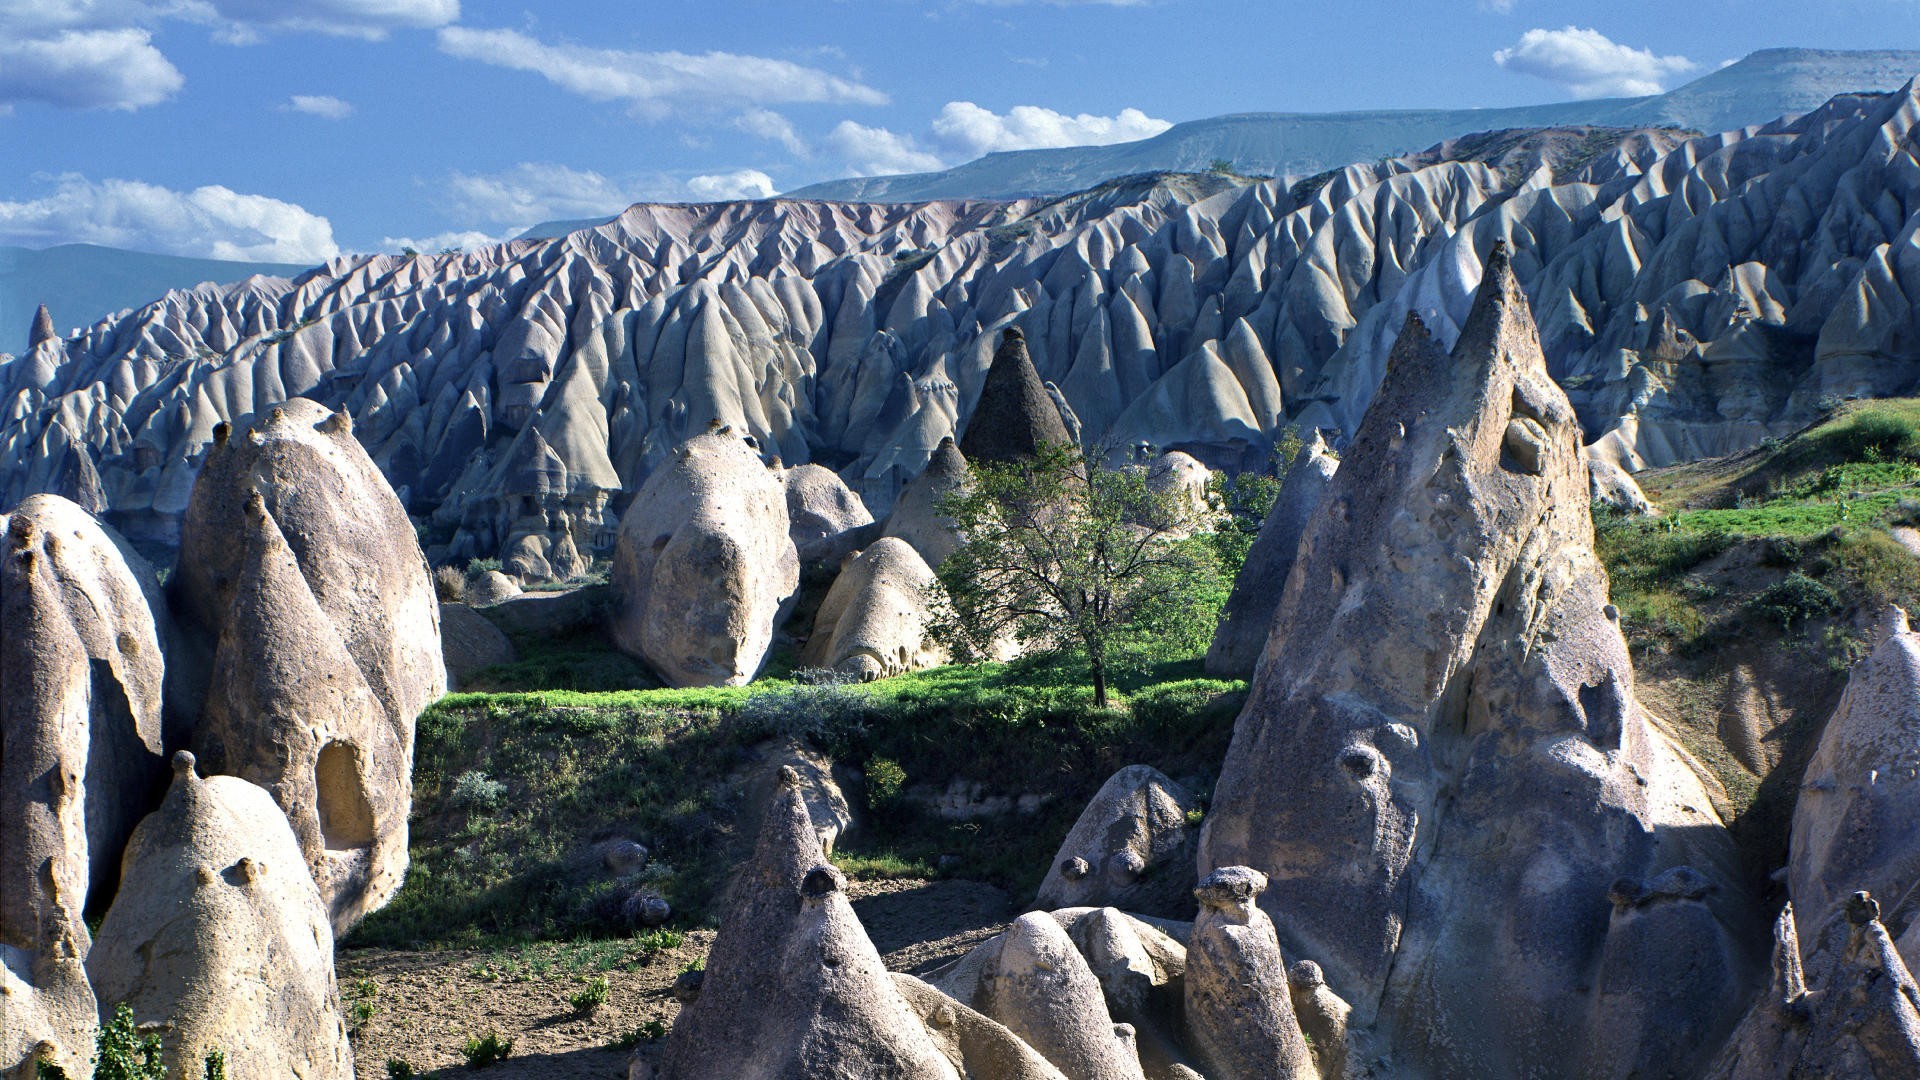 Cappadocia Rock Landscape 1920x1080